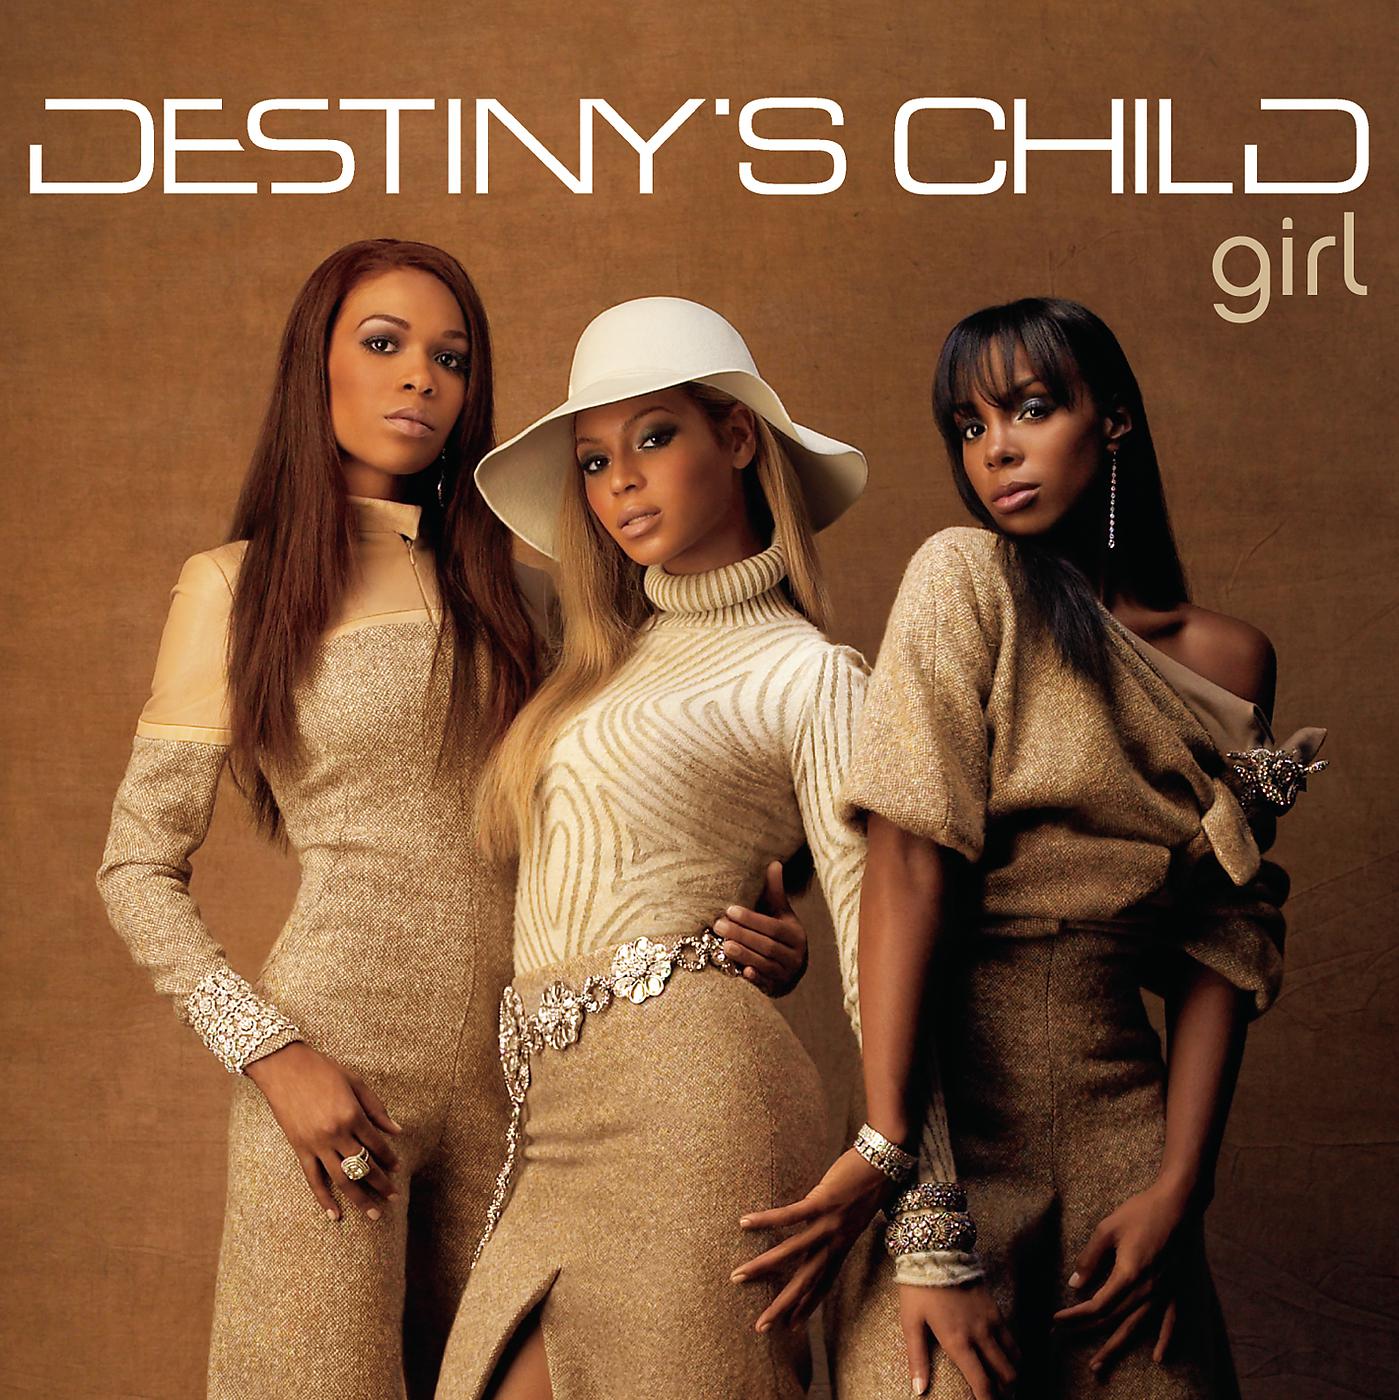 Слушать группу судьба. Группа Destiny’s child. Destiny's child "#1's, CD". Участницы Destiny's child. Destiny's child фото.